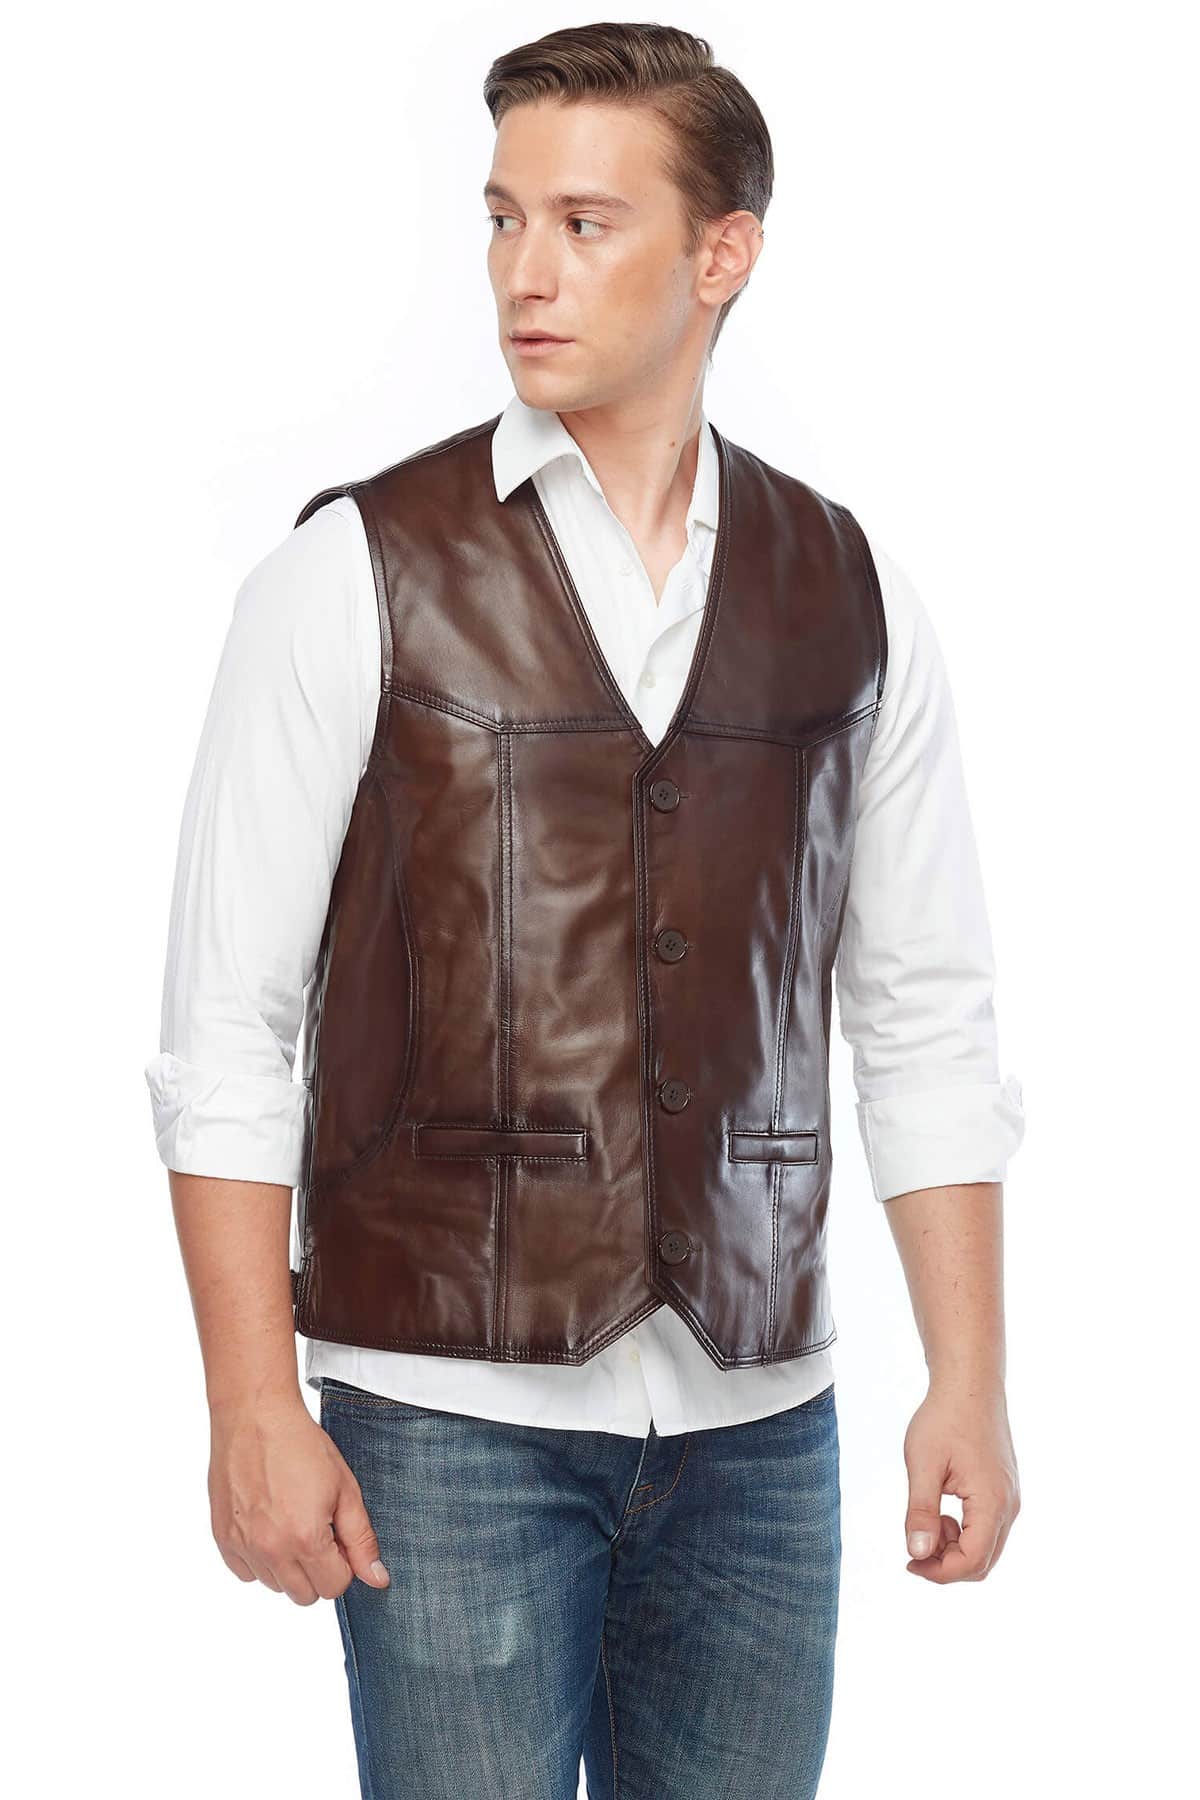 Oliver Goodwill Brown Men’s Leather Vest Coat Side